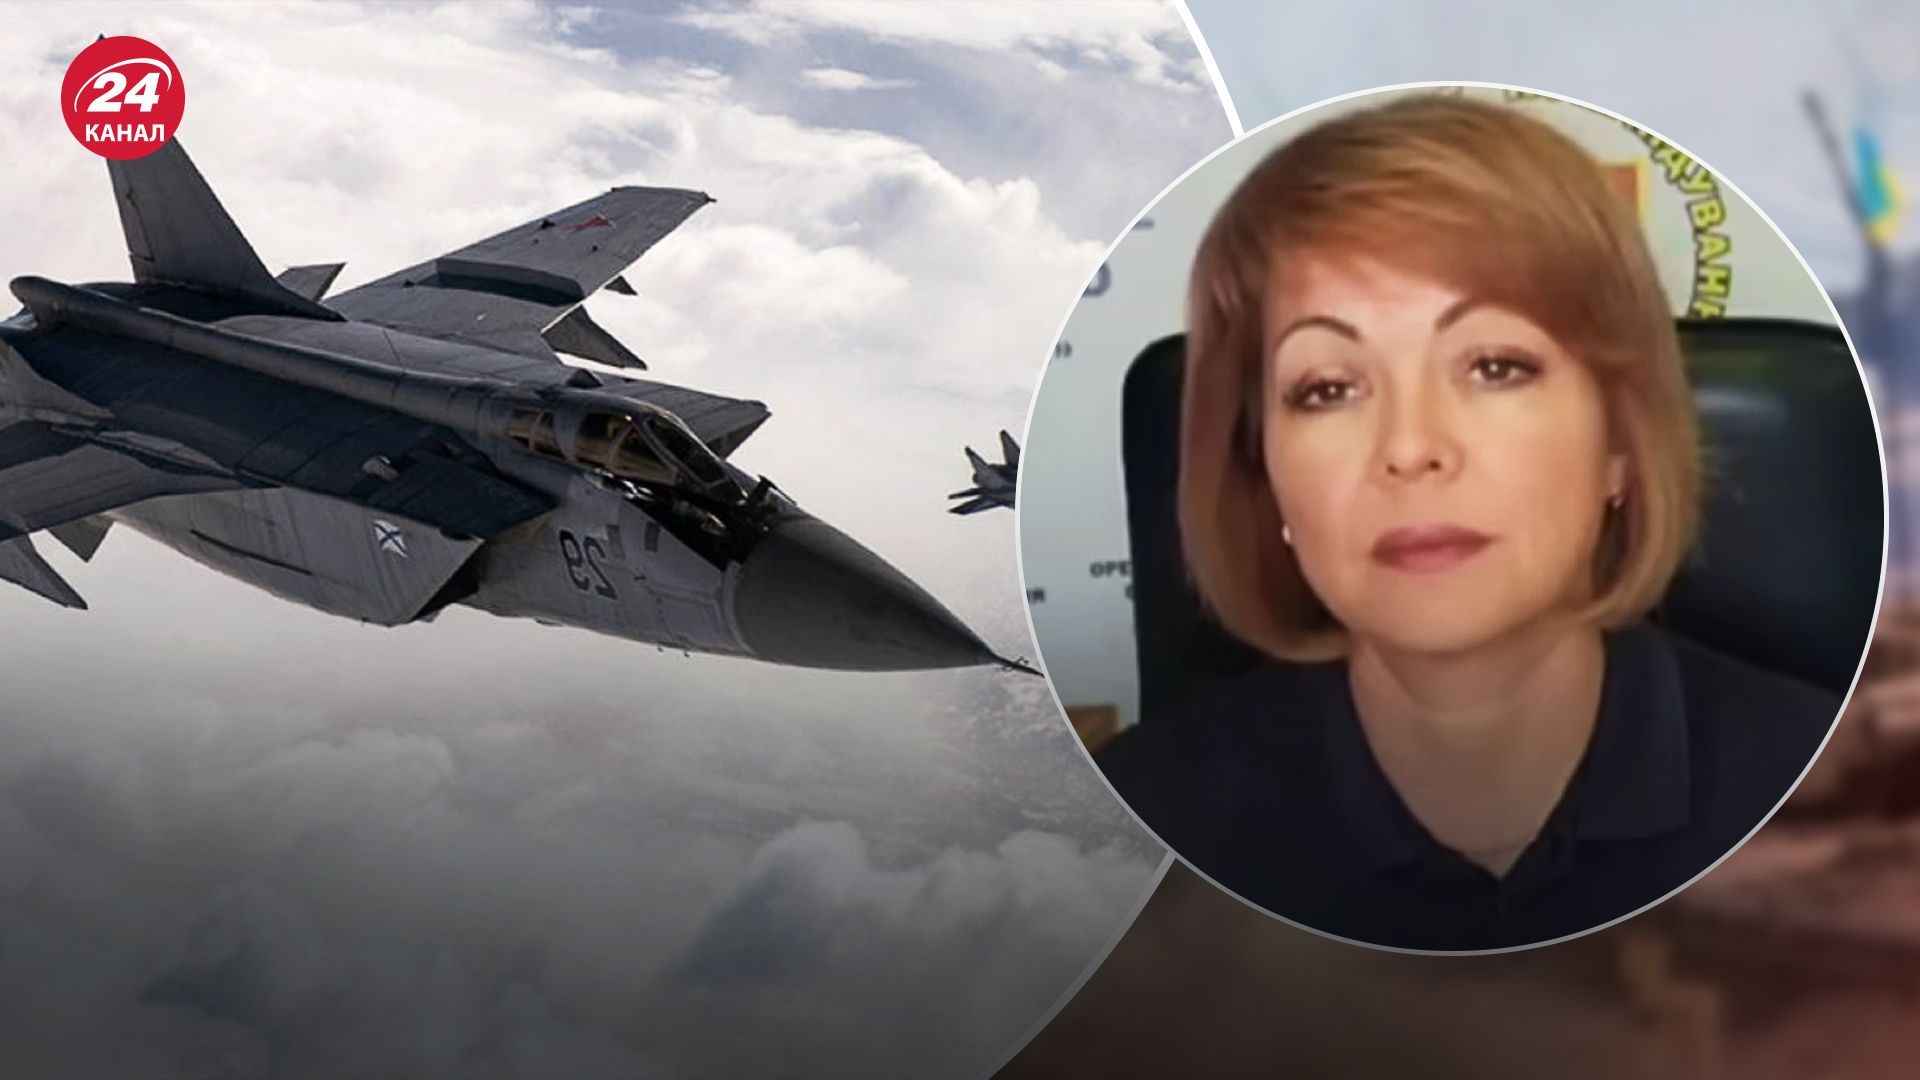 Гуменюк сказала, повлияет ли патрулирование самолетов МиГ на тревоги в Украине